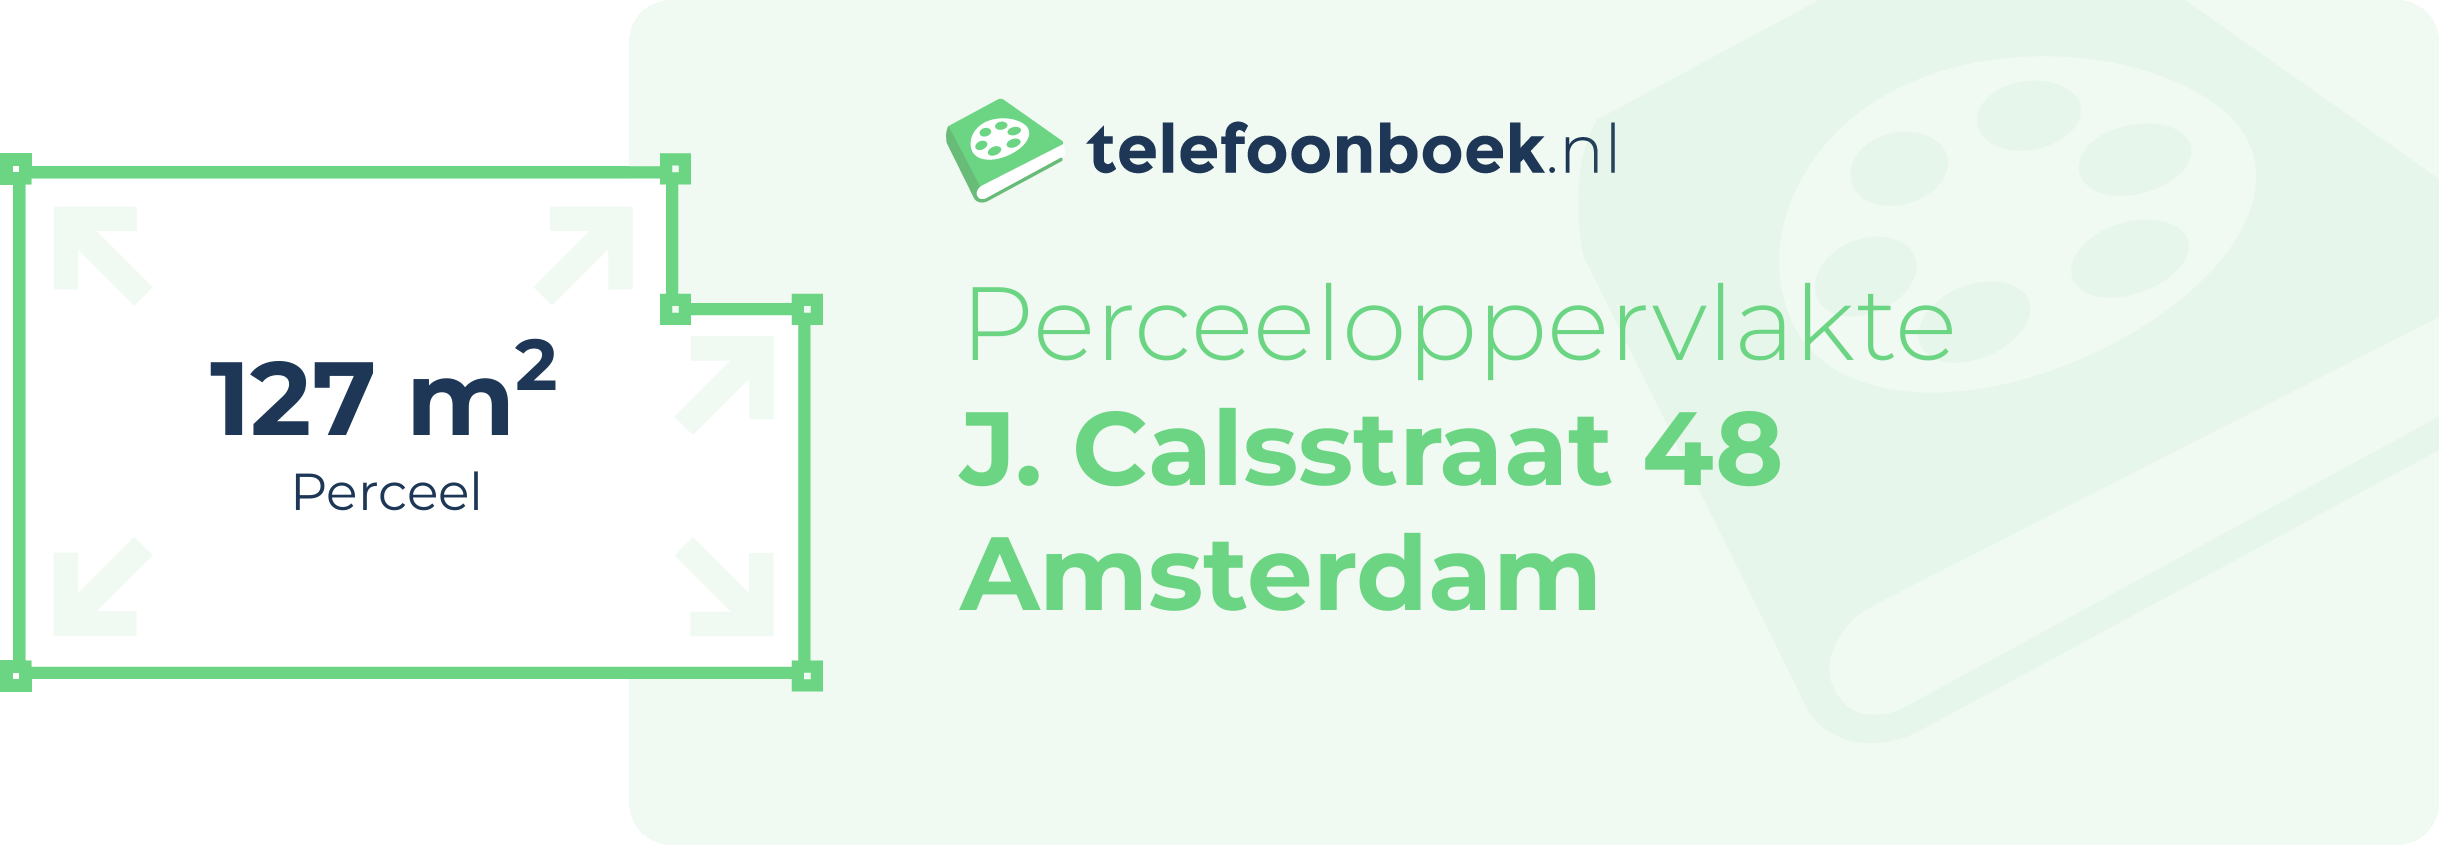 Perceeloppervlakte J. Calsstraat 48 Amsterdam